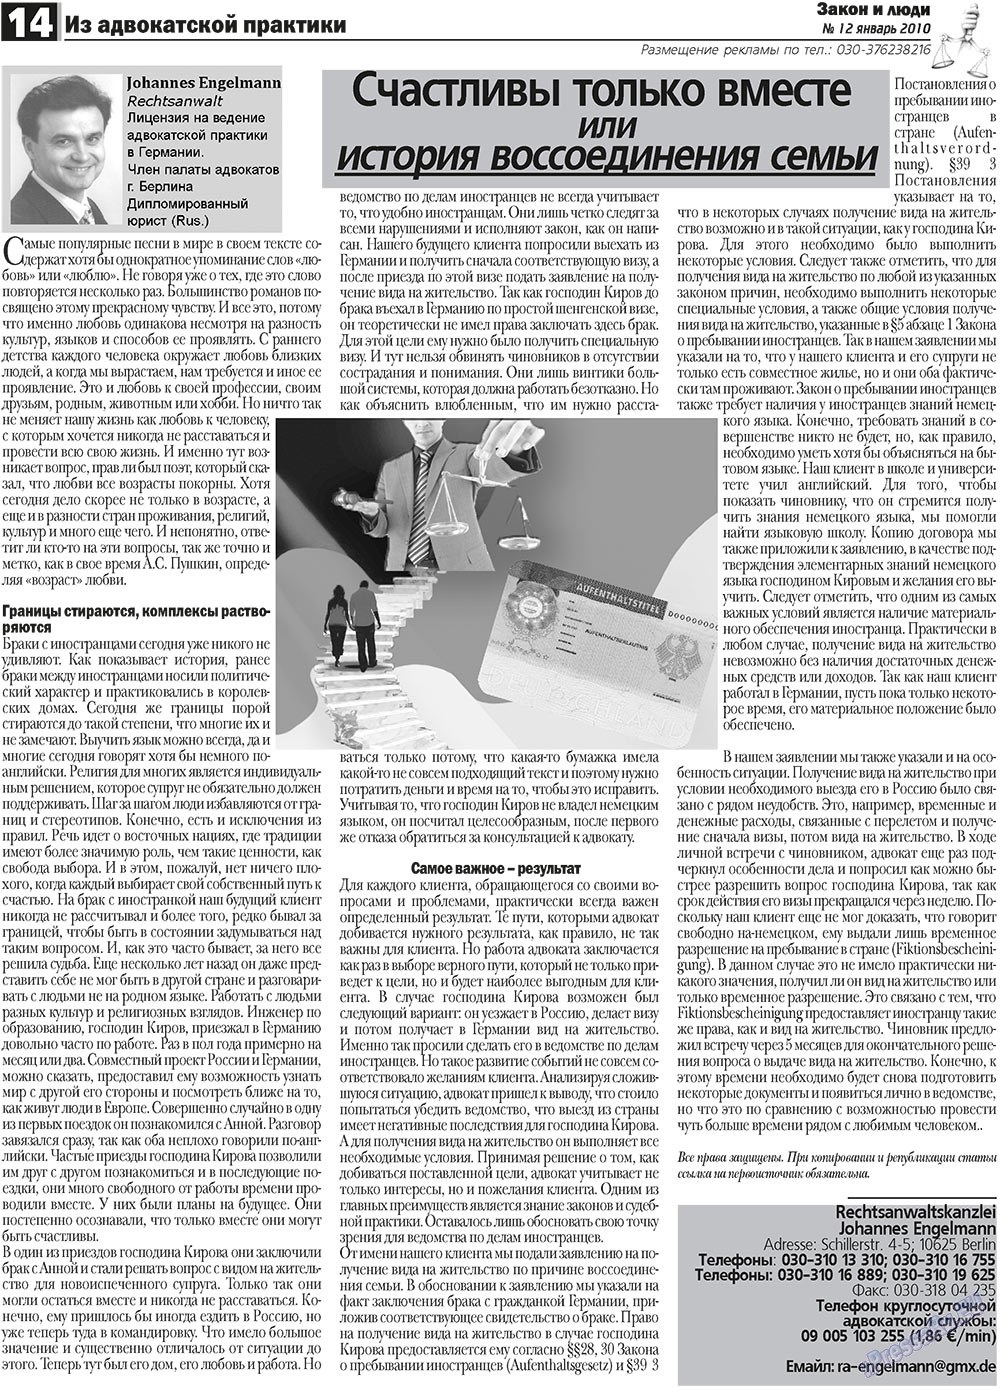 Закон и люди (газета). 2011 год, номер 1, стр. 14